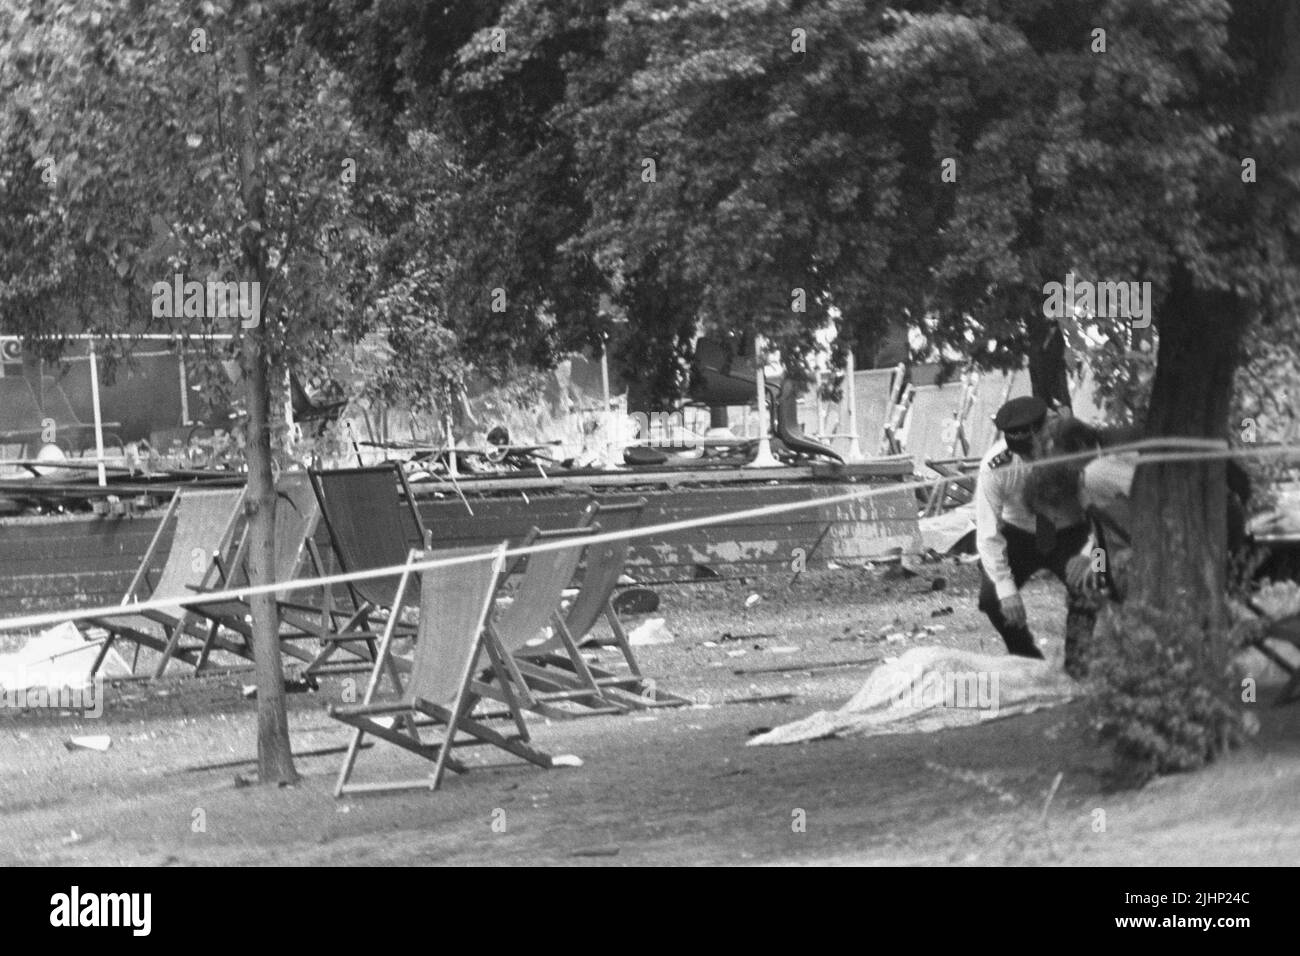 Foto de archivo de fecha 20/7/1982 de la policía examinando un cuerpo cubierto por una manta cerca del devastado stand de la banda en Regent's Park, Londres, después de una explosión de una bomba del IRA. Las familias de los soldados muertos en los atentados con bombas del IRA en Hyde Park y Regent's Park han dicho que su sufrimiento sigue sin disminuir 40 años después. En total, 11 militares murieron en los dos ataques que tuvieron lugar a pocas horas en Londres el 20 1982 de julio. Fecha de emisión: Miércoles 20 de julio de 2022. Foto de stock